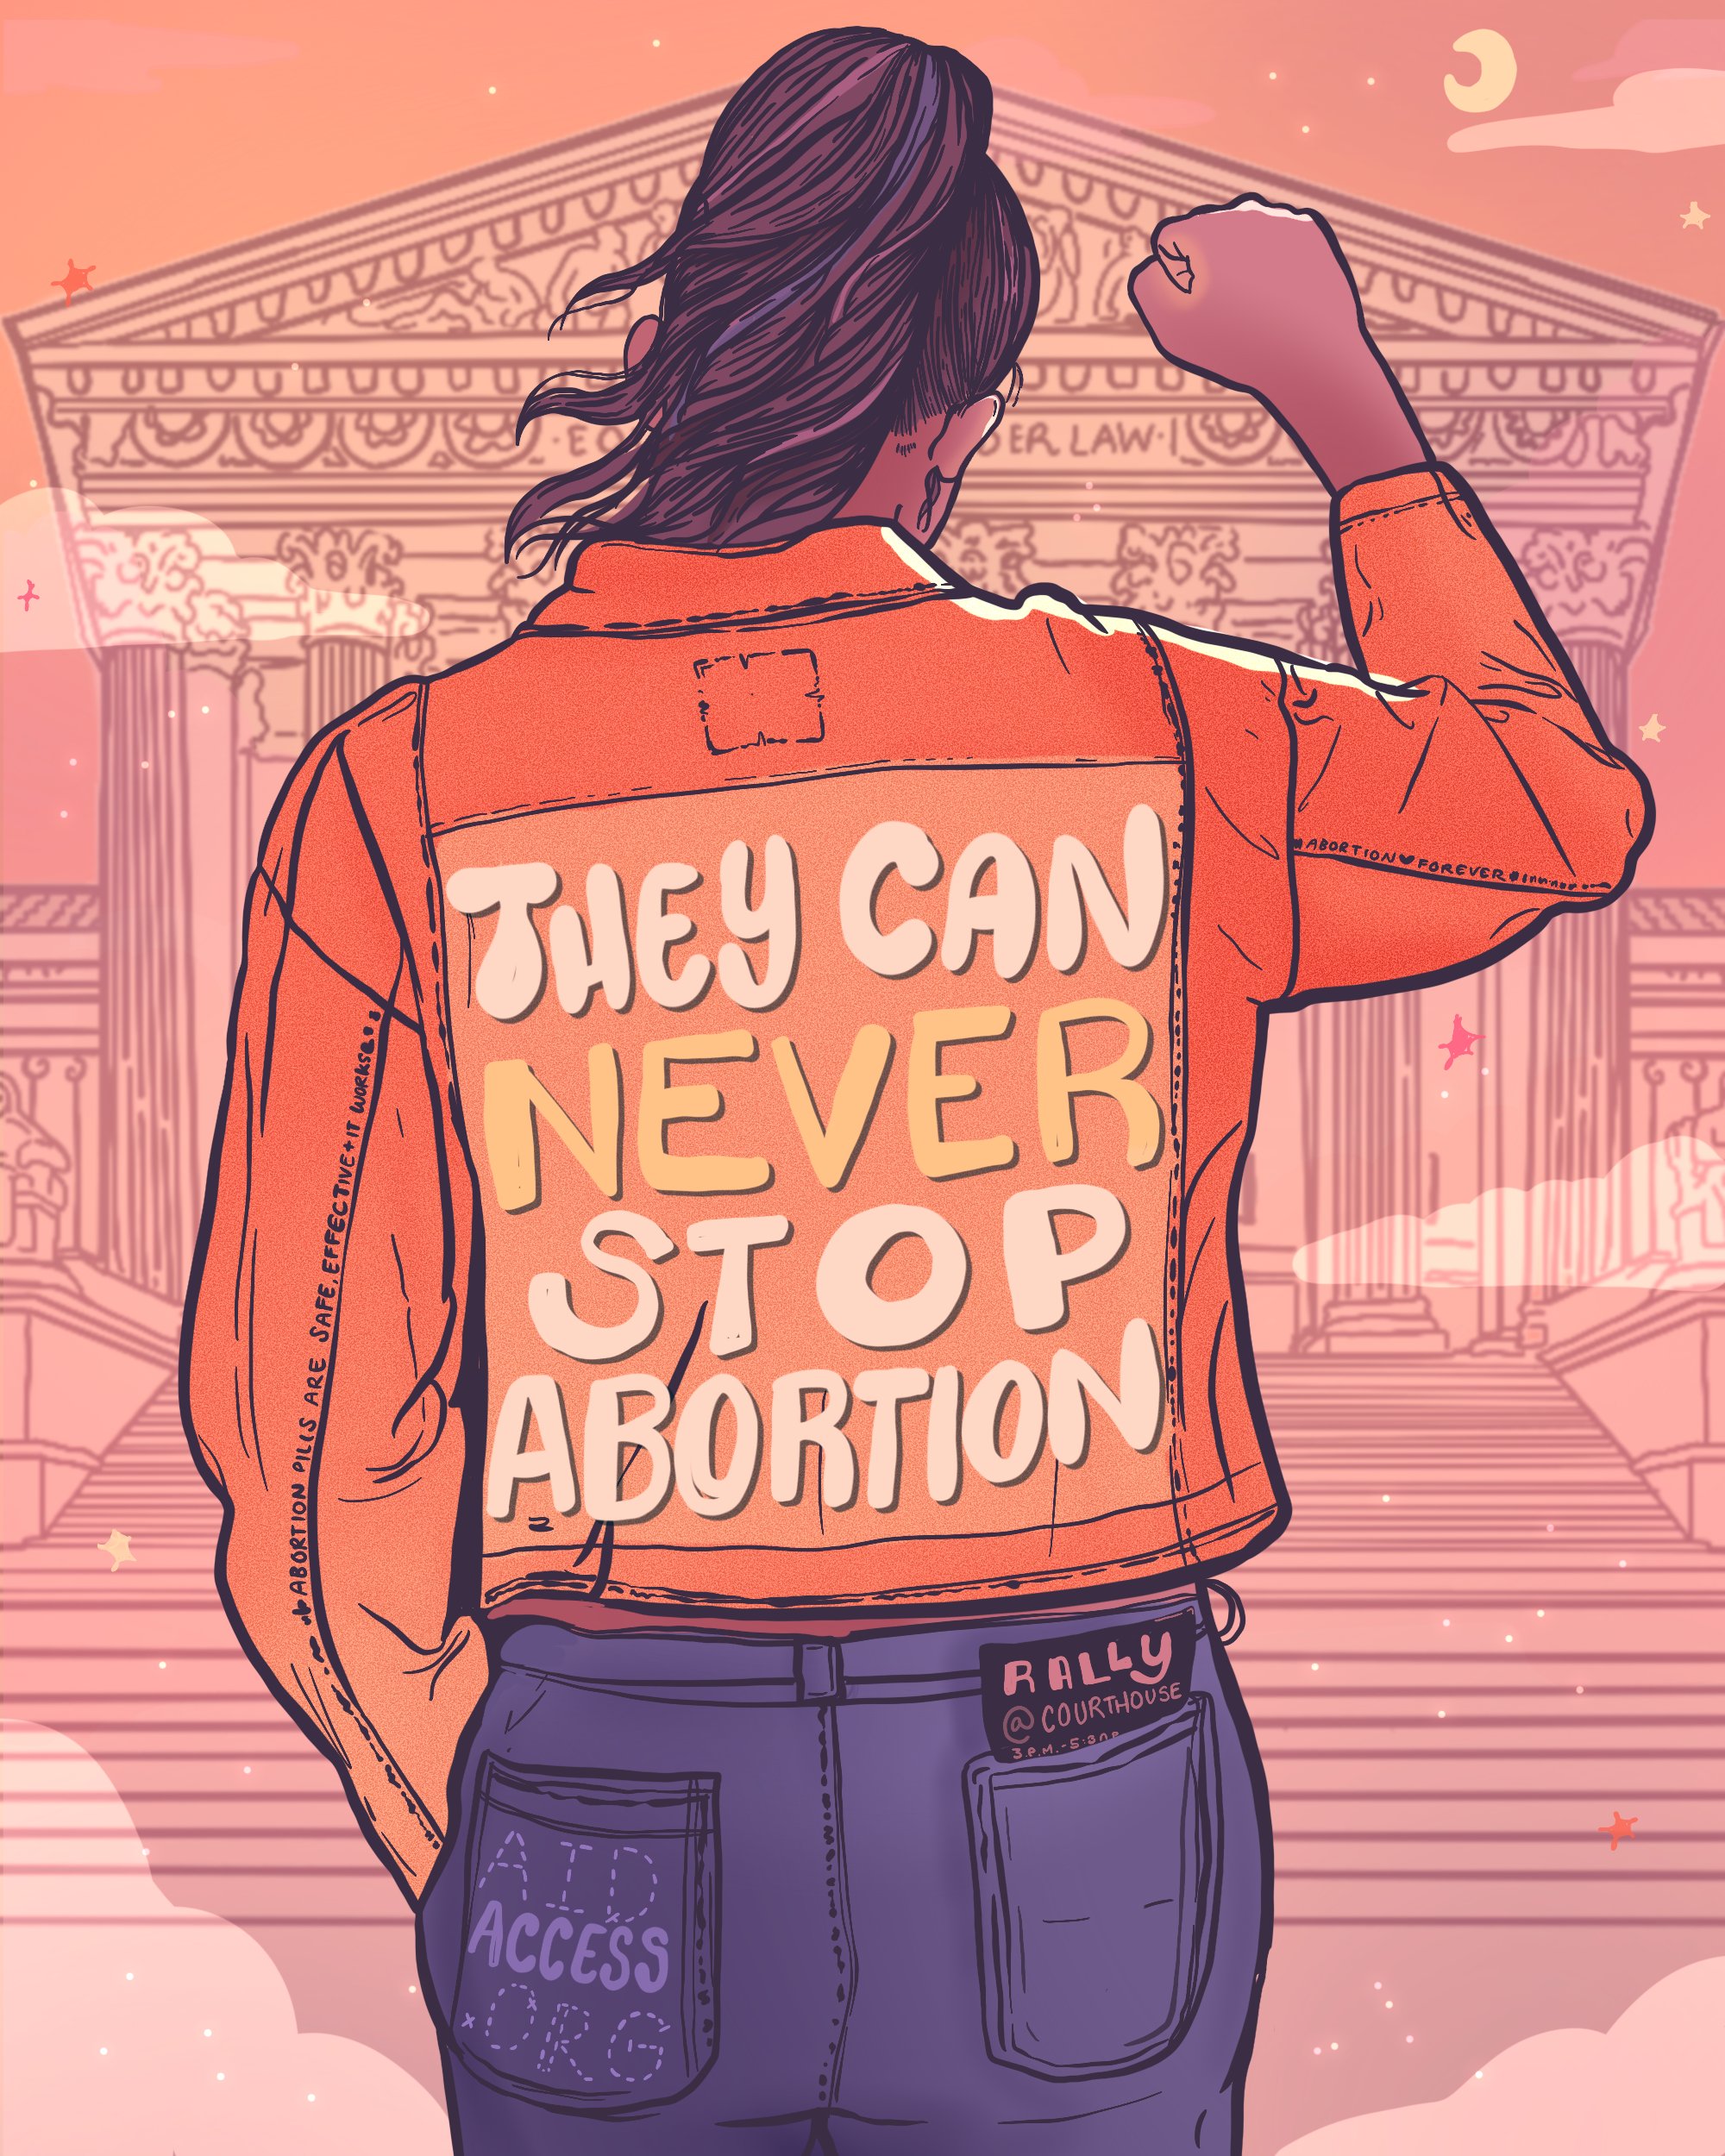 Aborto y Roe v wade: en la imagen se puede ver una mujer de espaldas. En su chamarra un texto dice "nunca pueden detener el aborto"